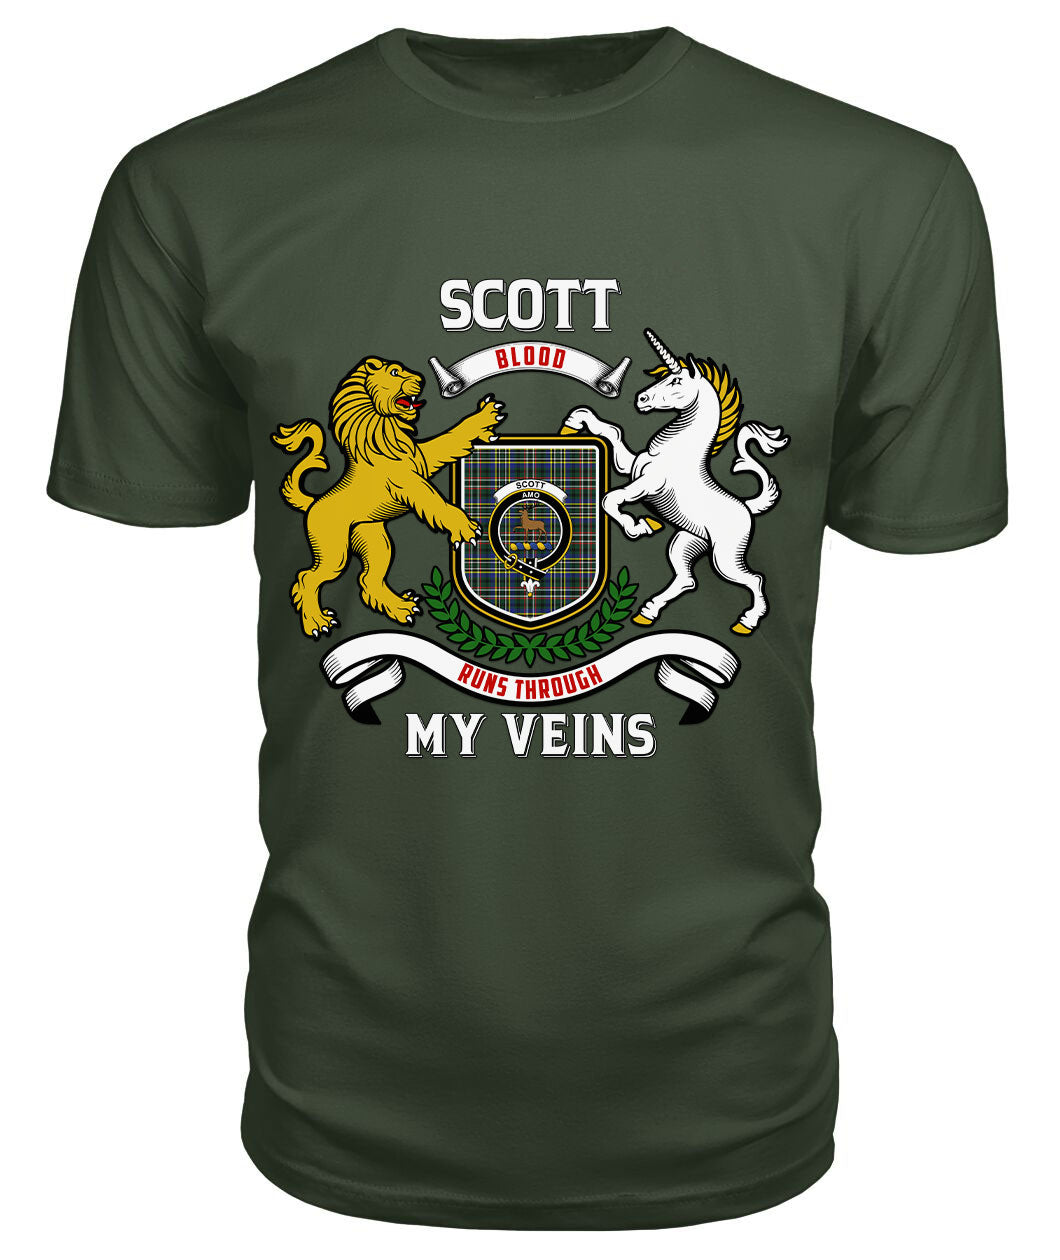 Scott Green Modern Tartan Crest 2D T-shirt - Blood Runs Through My Veins Style